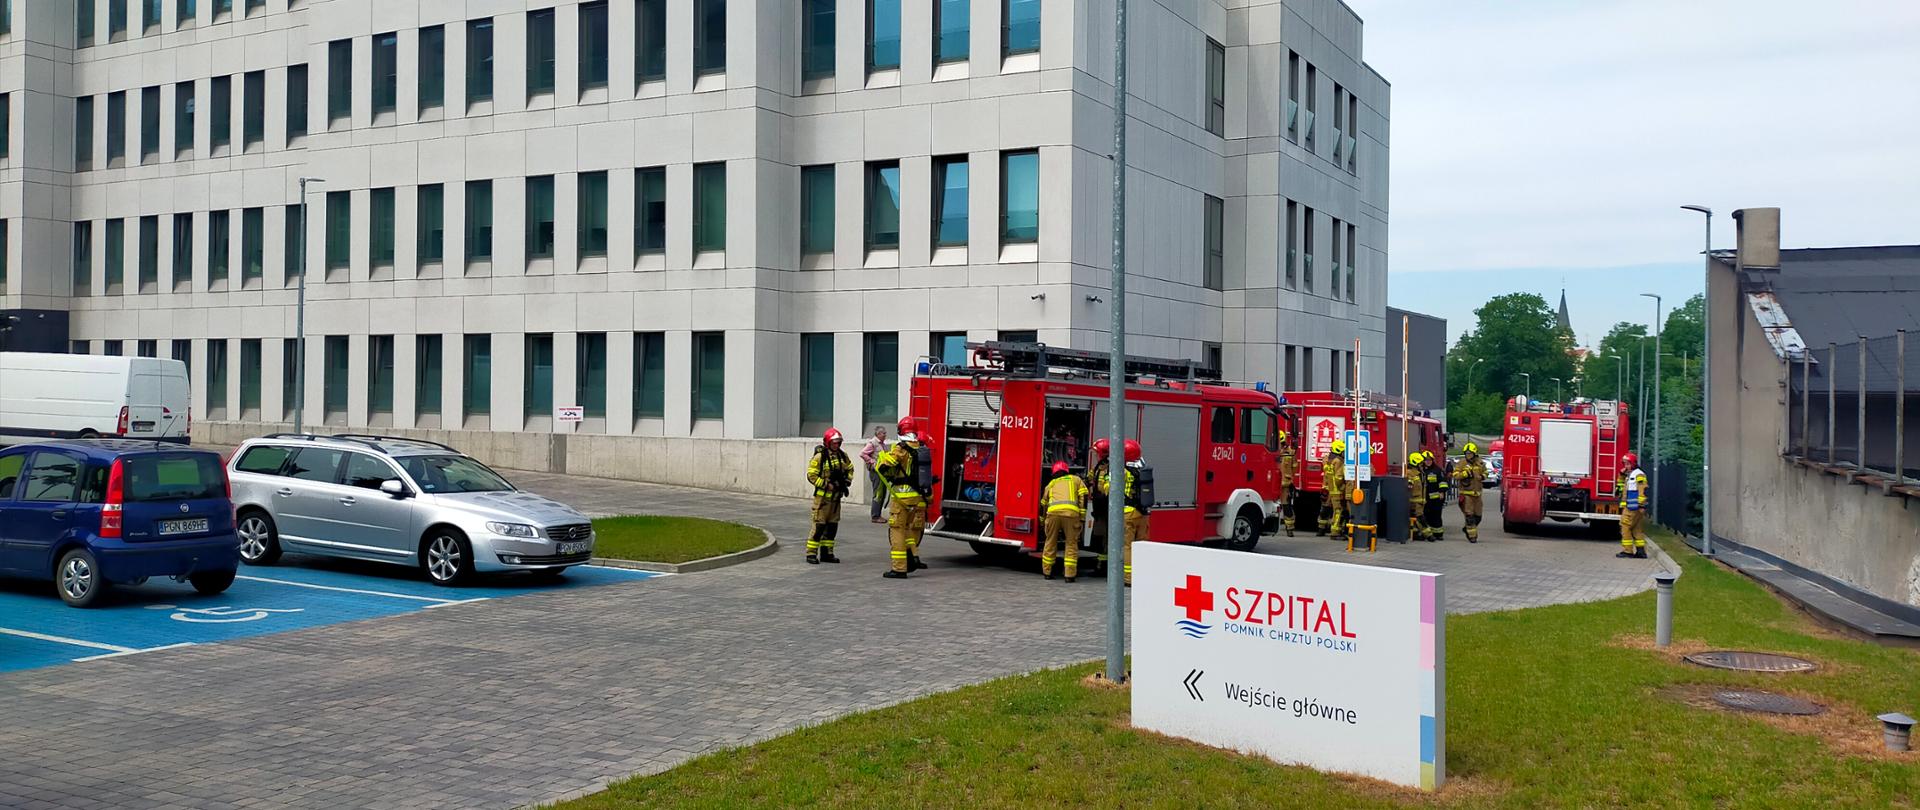 Na zdjęciu widać budynek szpitala przed który podjechały samochody pożarnicze. Strażacy zaczynają przygotowywać sprzęt do działań